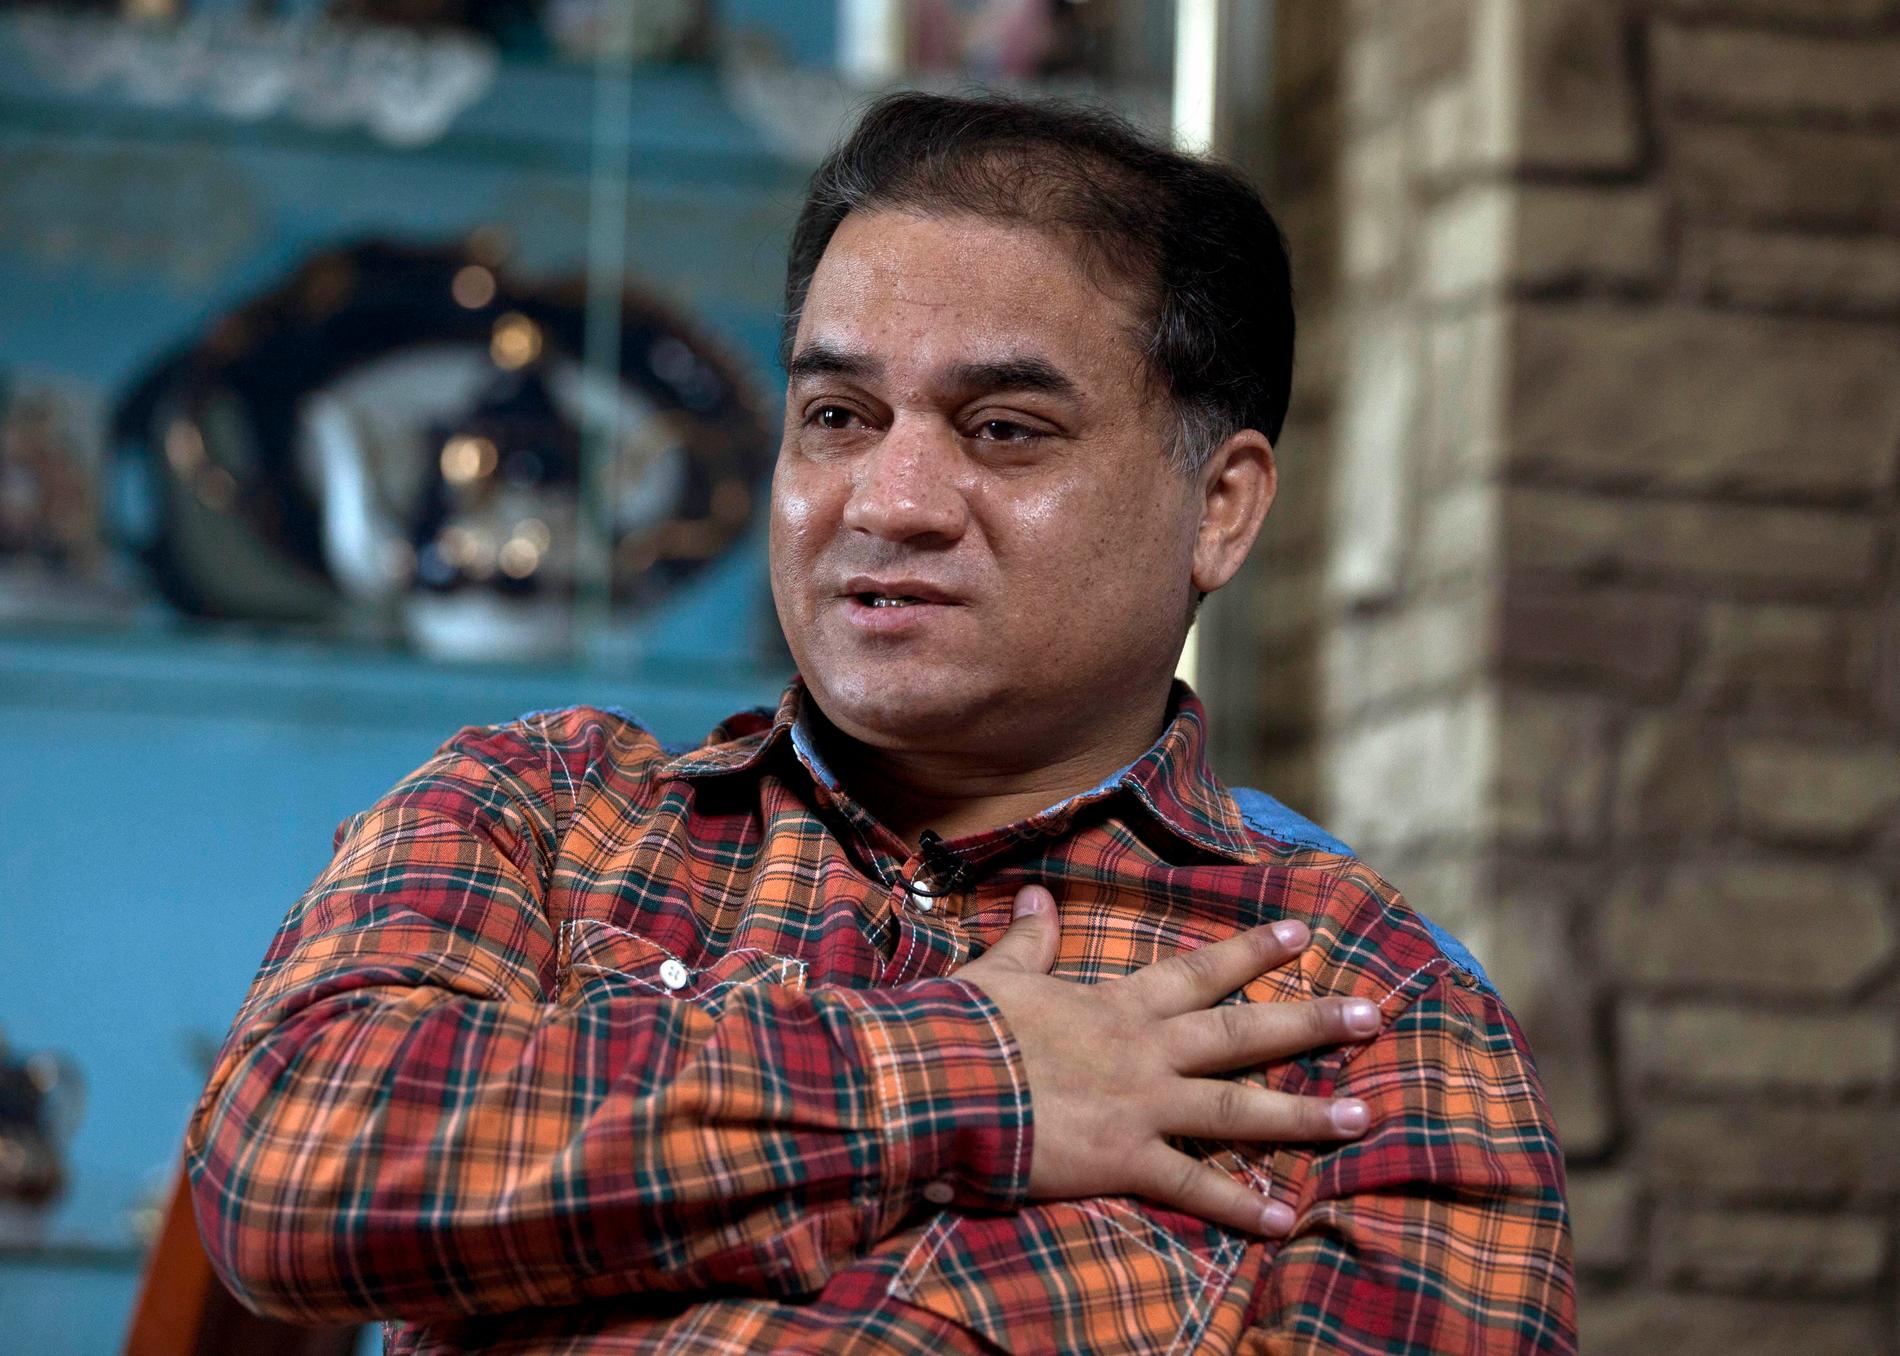 Uiguraktivisten Ilham Tohti, fängslad i Kina sedan 2014, får årets Sacharov-pris av EU-parlamentet. Arkivfoto.